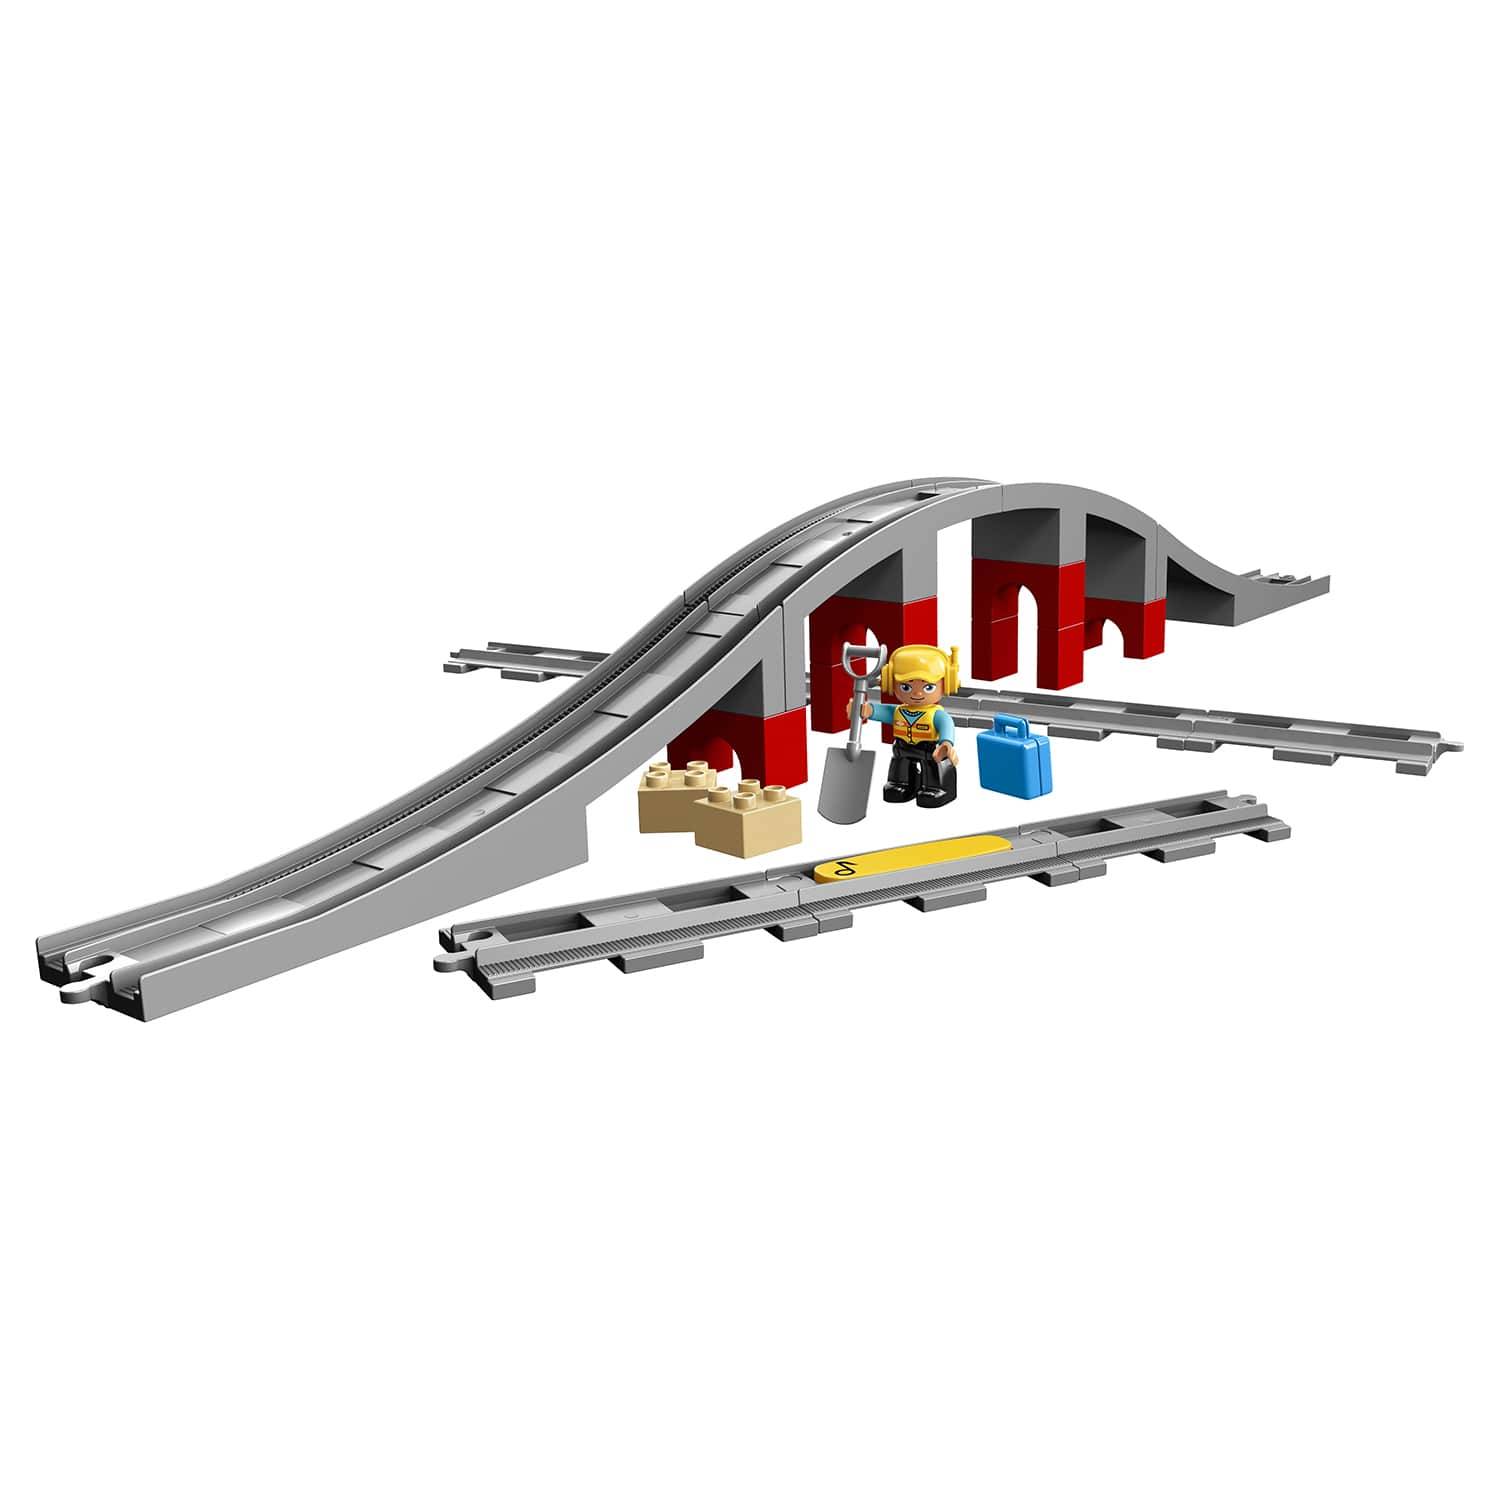 Конструктор LEGO Duplo 10872 Железнодорожный мост и рельсы